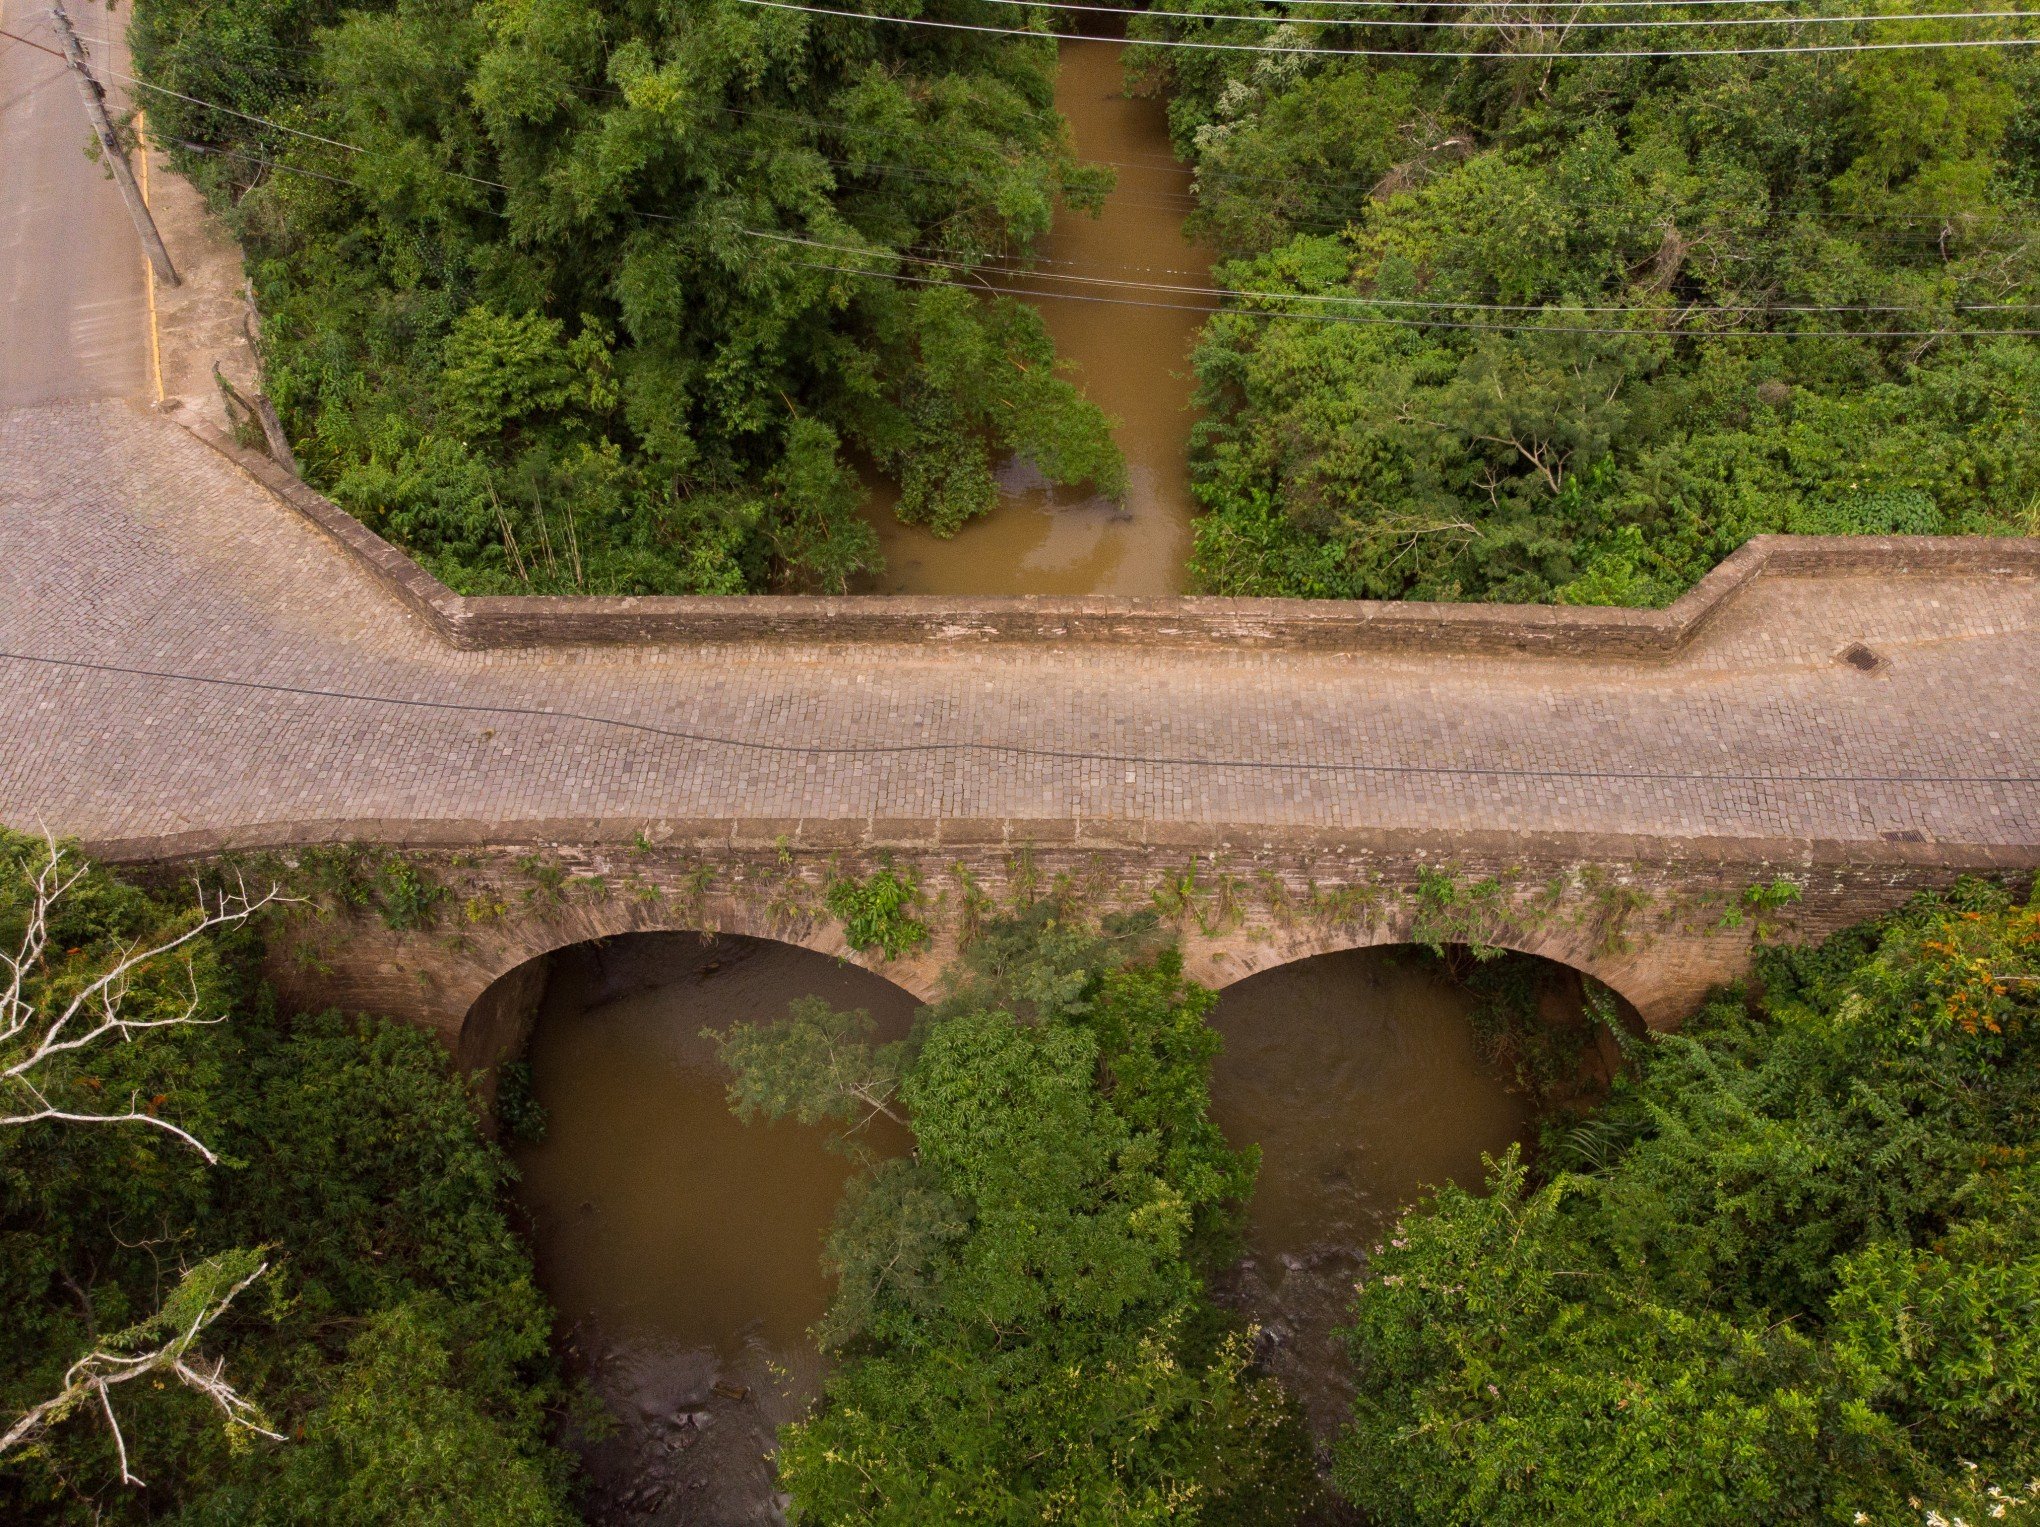 CURIOSIDADES DA IMIGRAÇÃO #100: Entenda os motivos para a região ter pontes "quase gêmeas"